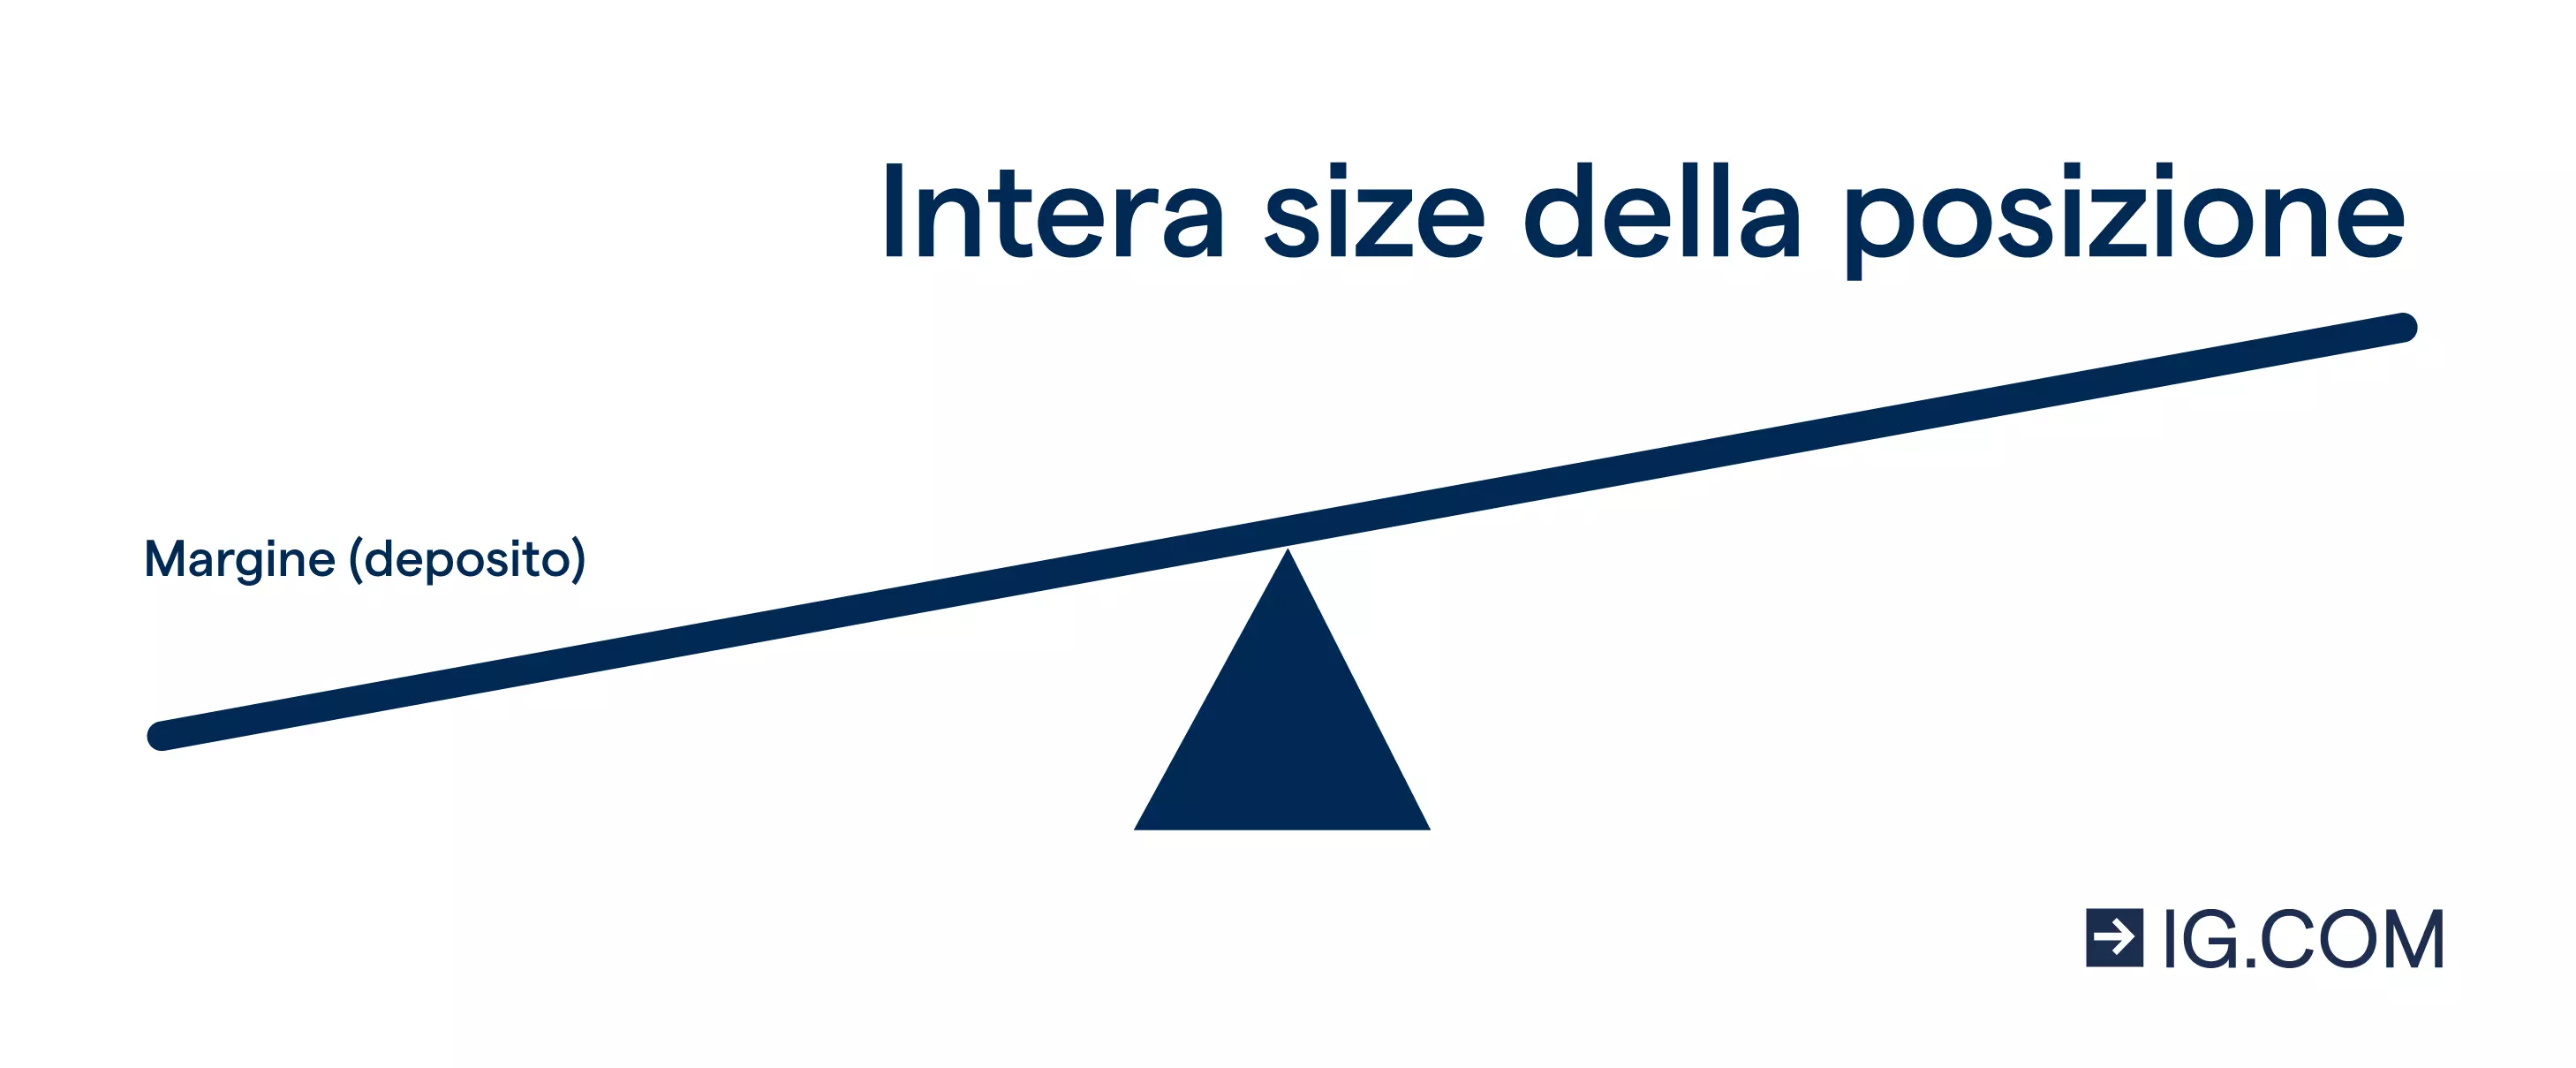 Grafica di un'altalena a carosello con "margine (deposito)" scritto piccolo in basso e "intera size della posizione" scritto grande in alto.